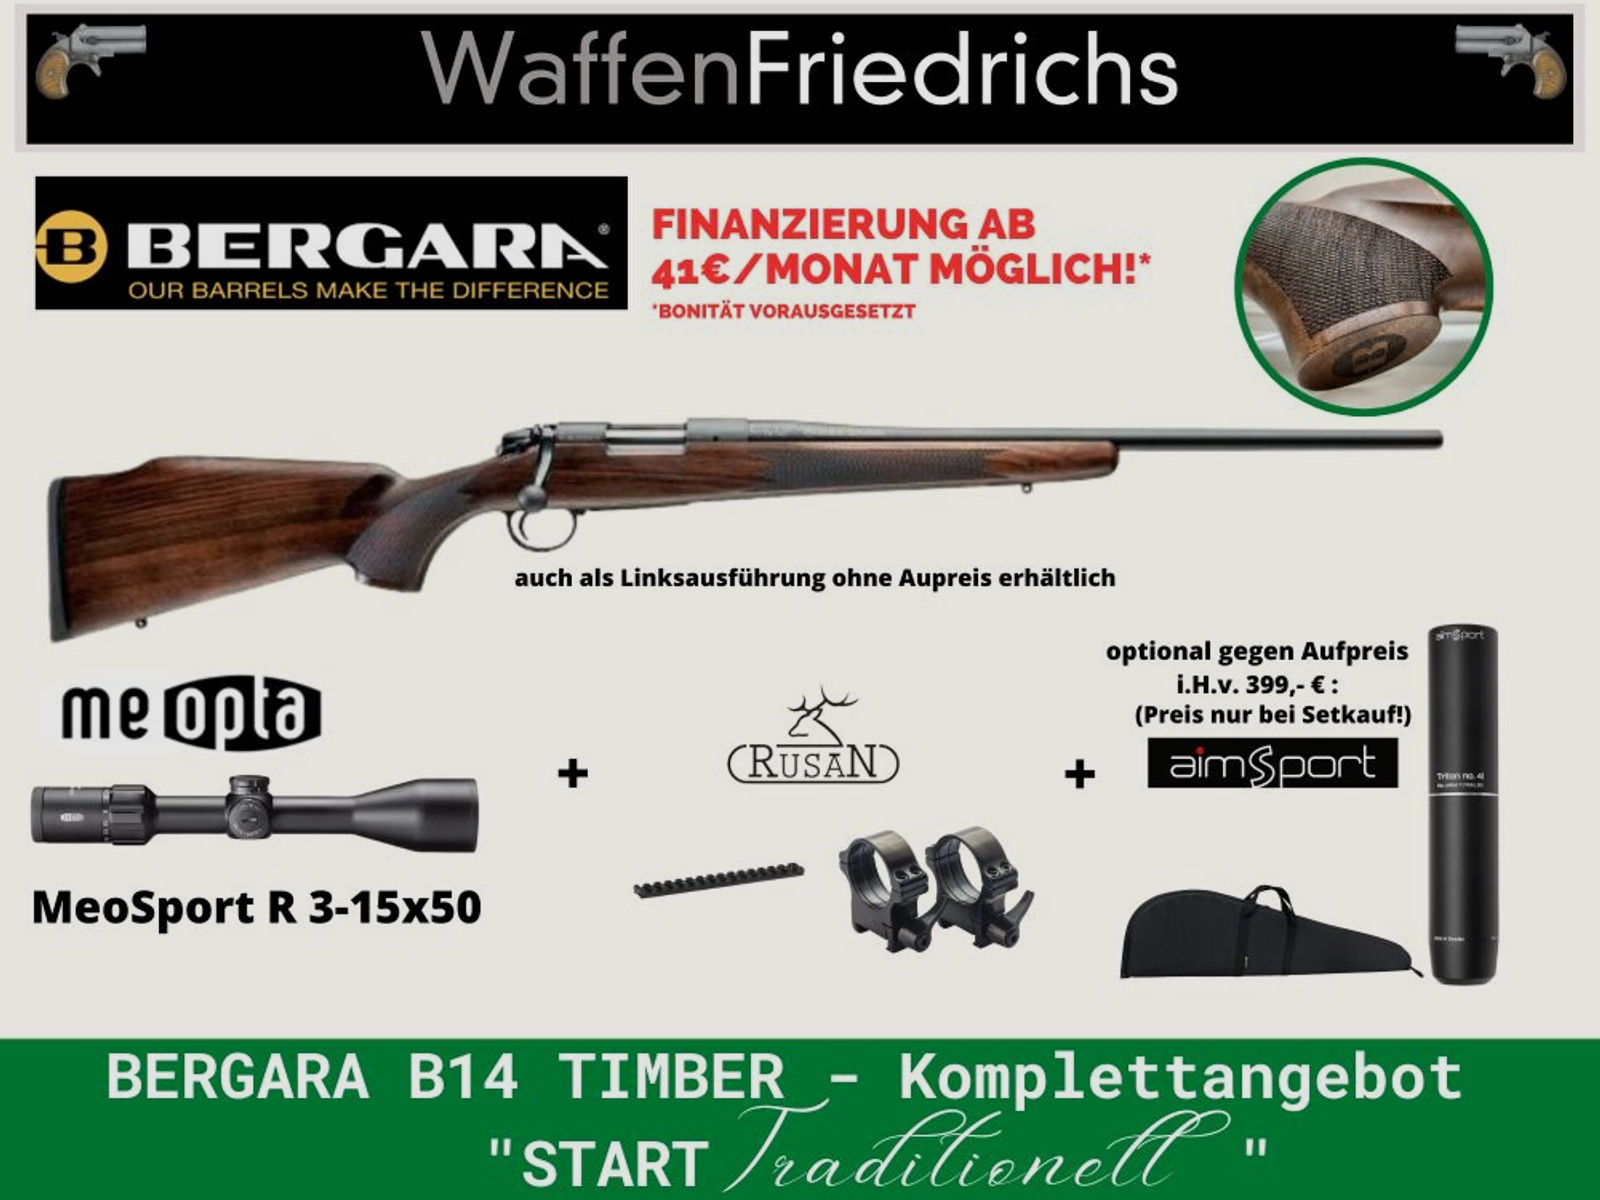 Bergara	 B14 Timber Komplettangebot "START Traditionell" | Jungjäger - Waffen Friedrichs